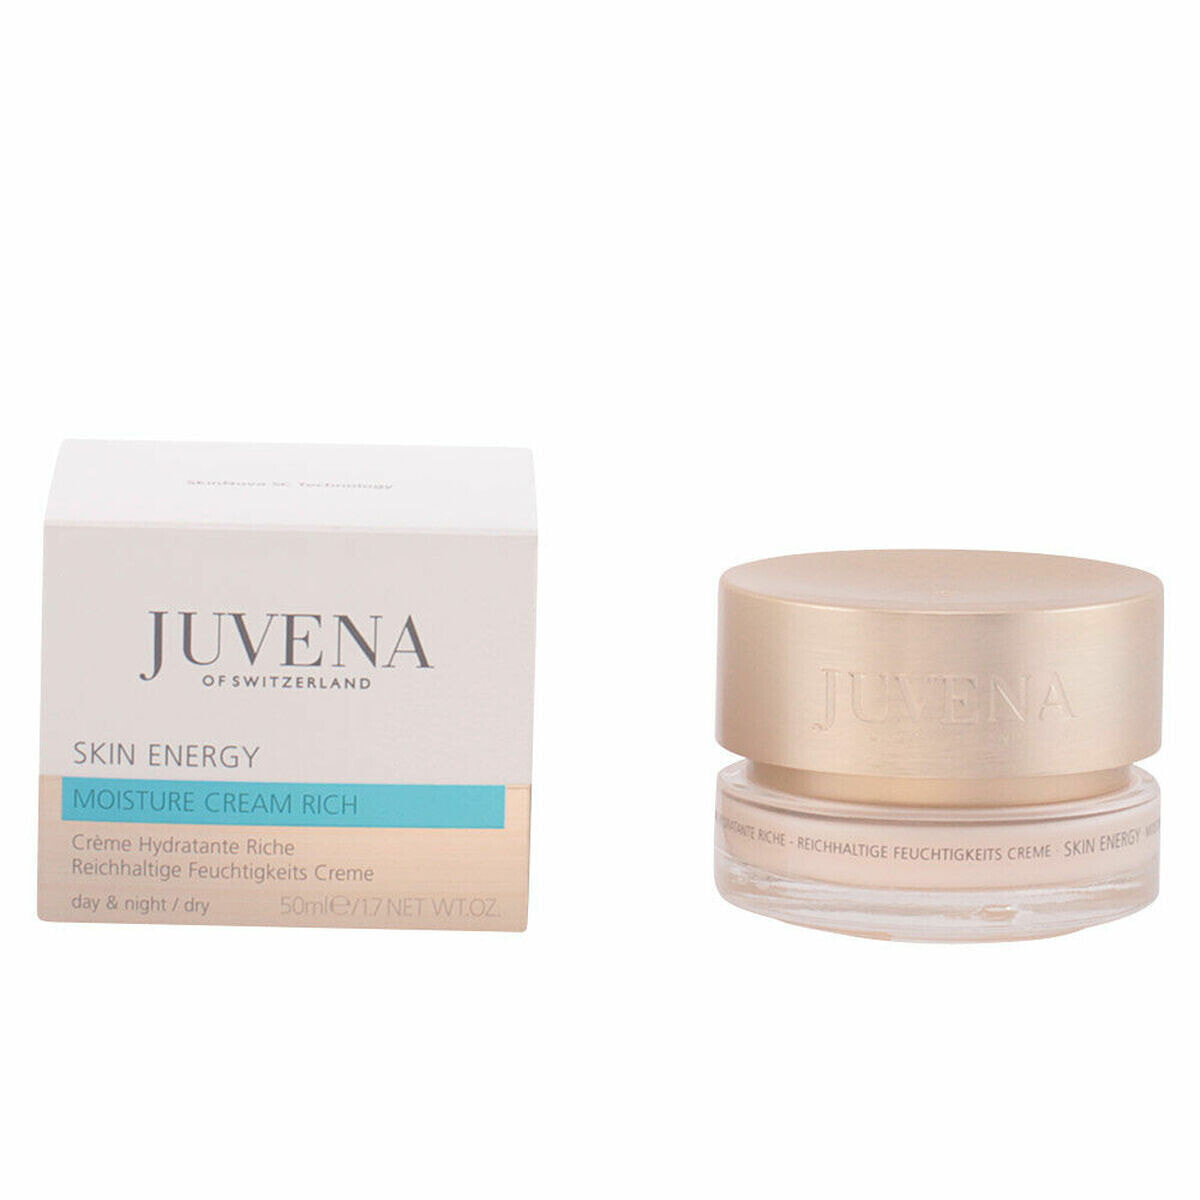 Питательный крем для лица Juvena Skin Energy (50 ml)